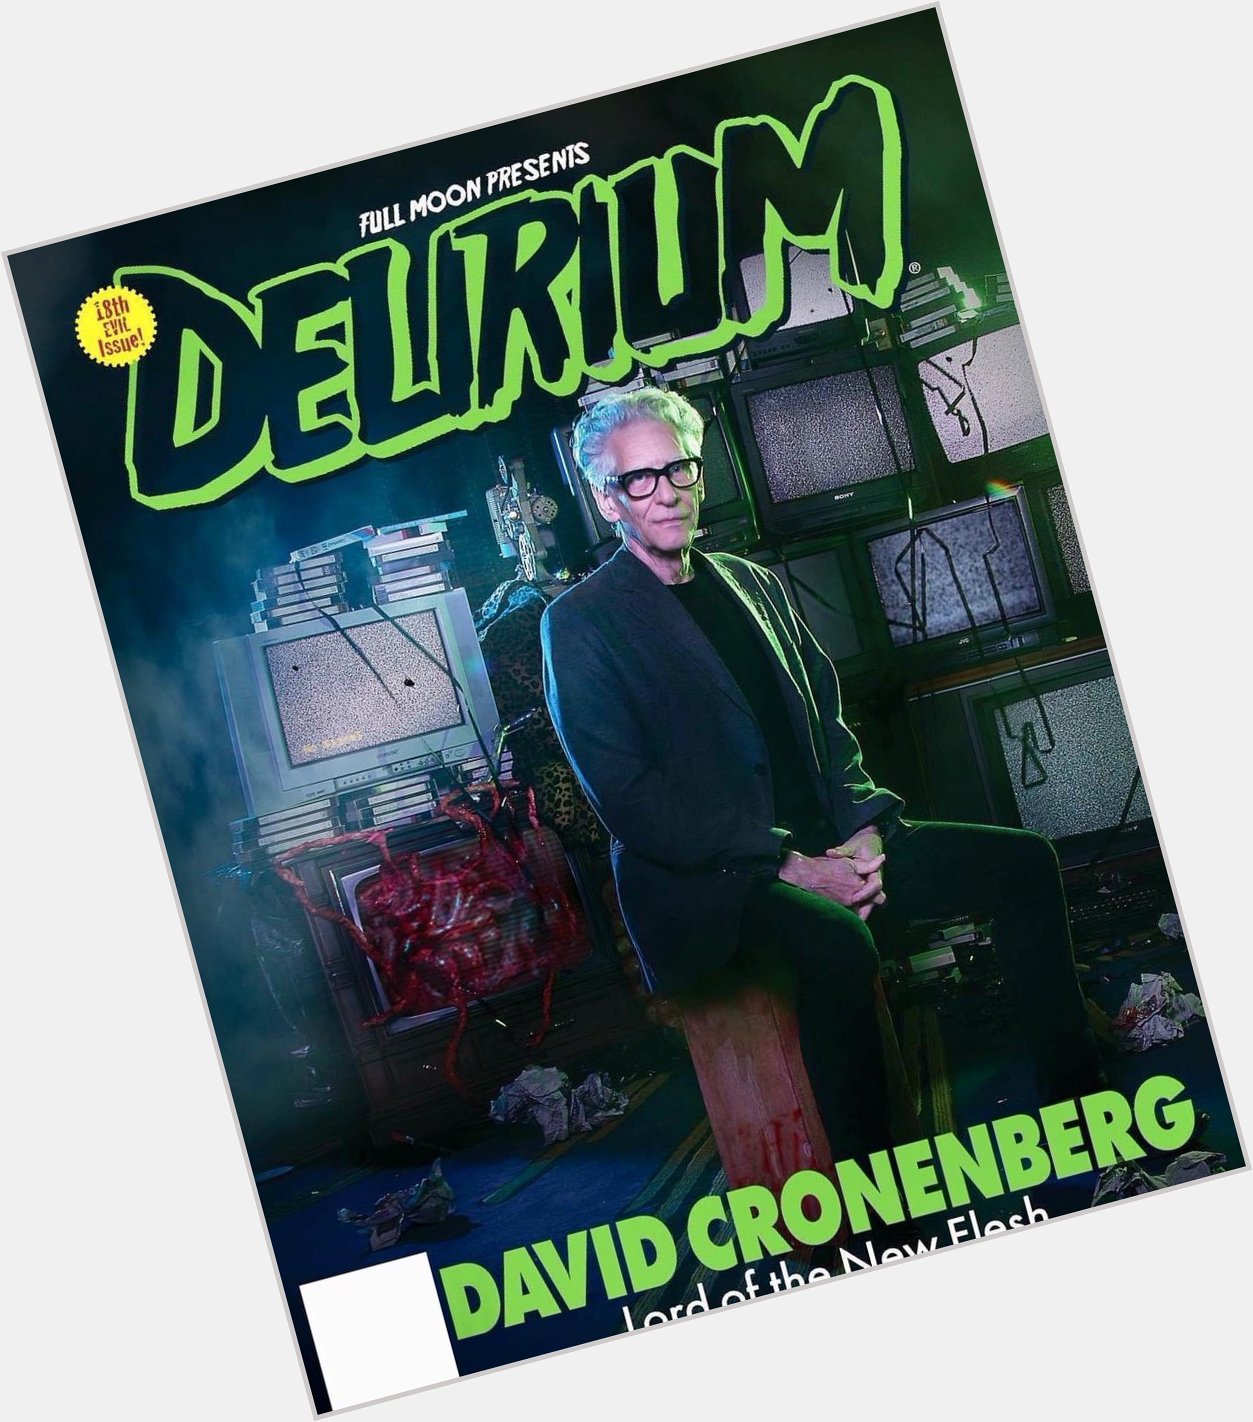 Happy birthday to the maestro, David Cronenberg!   